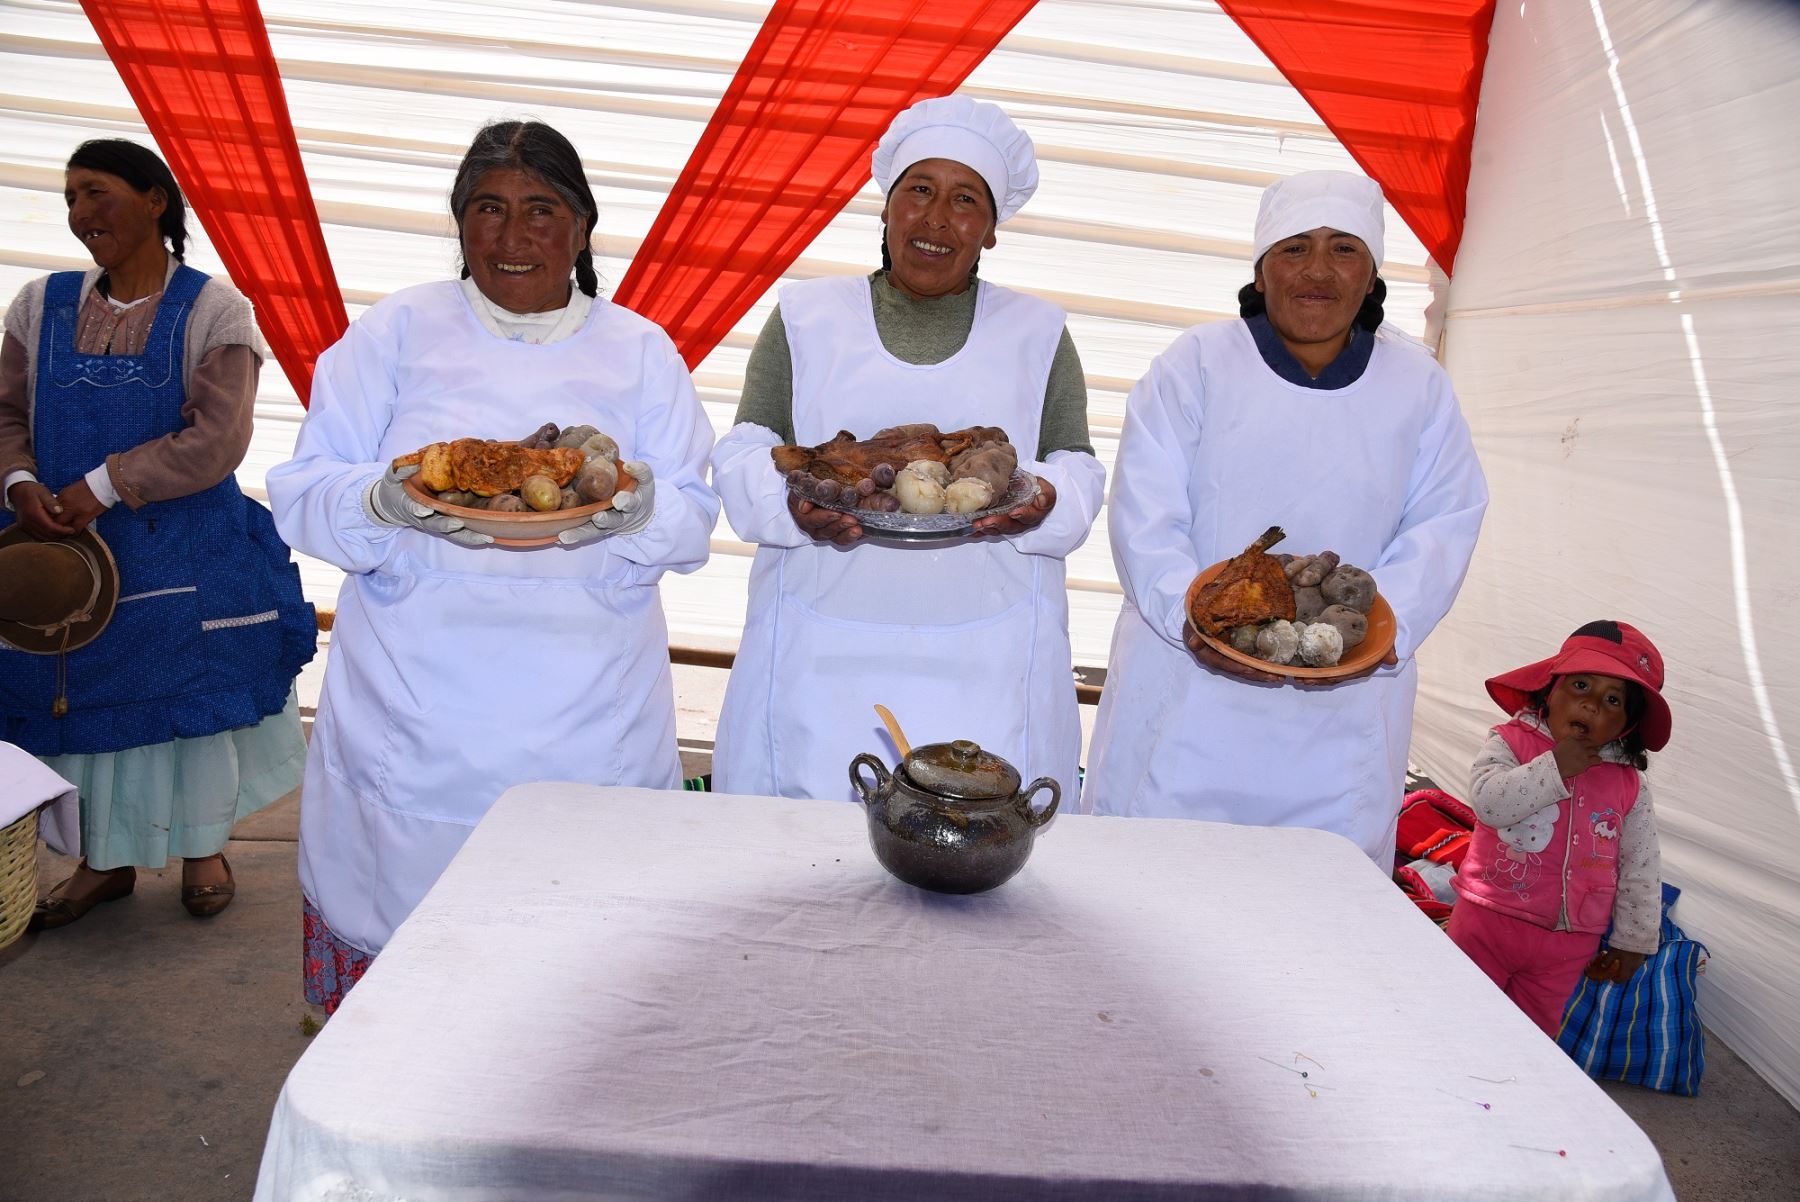 Usuarios de Haku Wiñay del distrito de San Juan de Salinas, en Puno, se suman a lucha contra la anemia y desnutrición infantil con emprendimientos rurales. ANDINA/Difusión